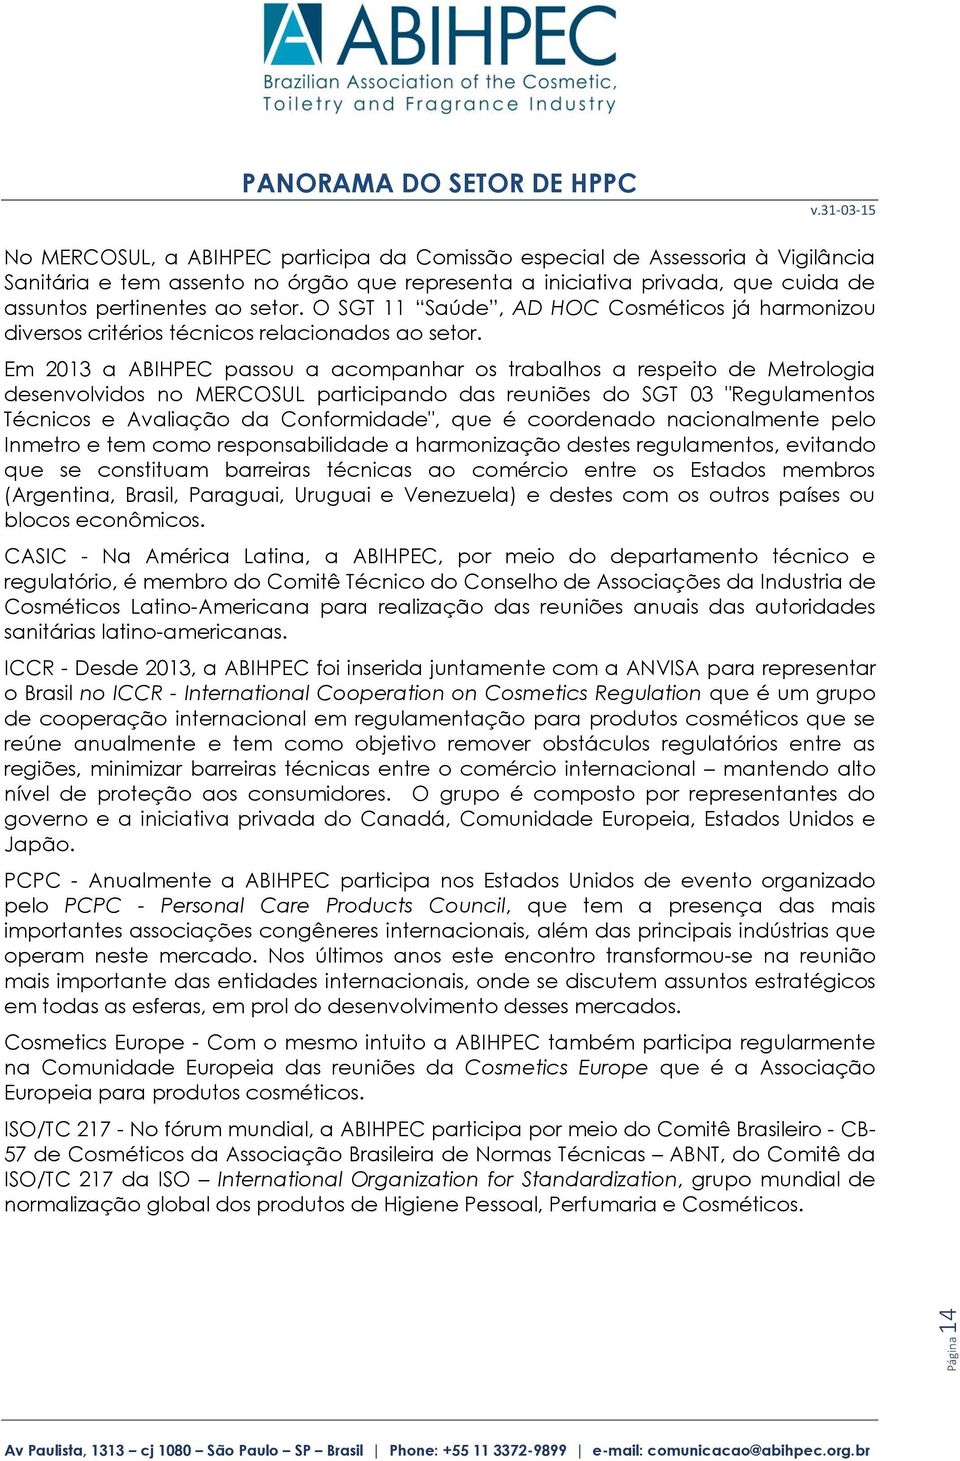 Em 2013 a ABIHPEC passou a acompanhar os trabalhos a respeito de Metrologia desenvolvidos no MERCOSUL participando das reuniões do SGT 03 "Regulamentos Técnicos e Avaliação da Conformidade", que é